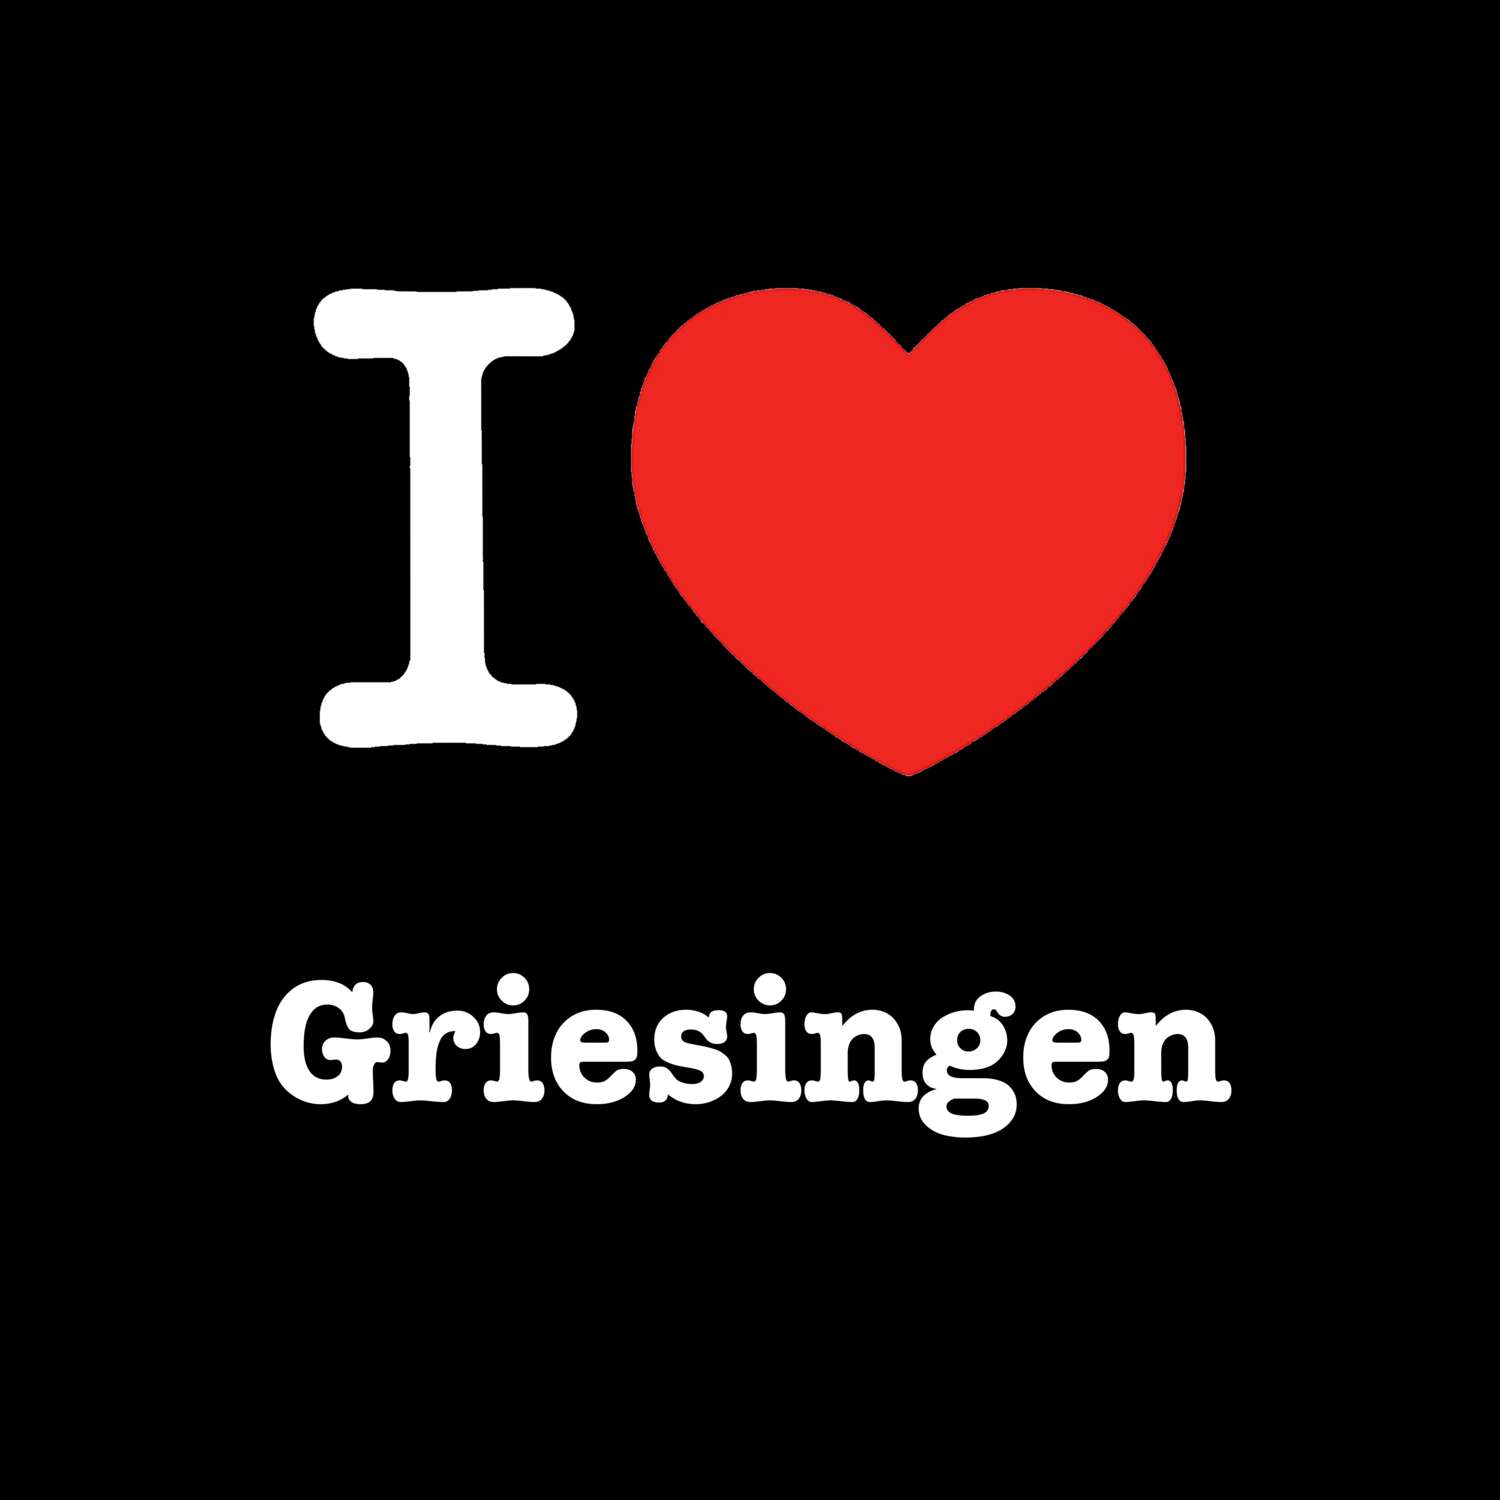 Griesingen T-Shirt »I love«